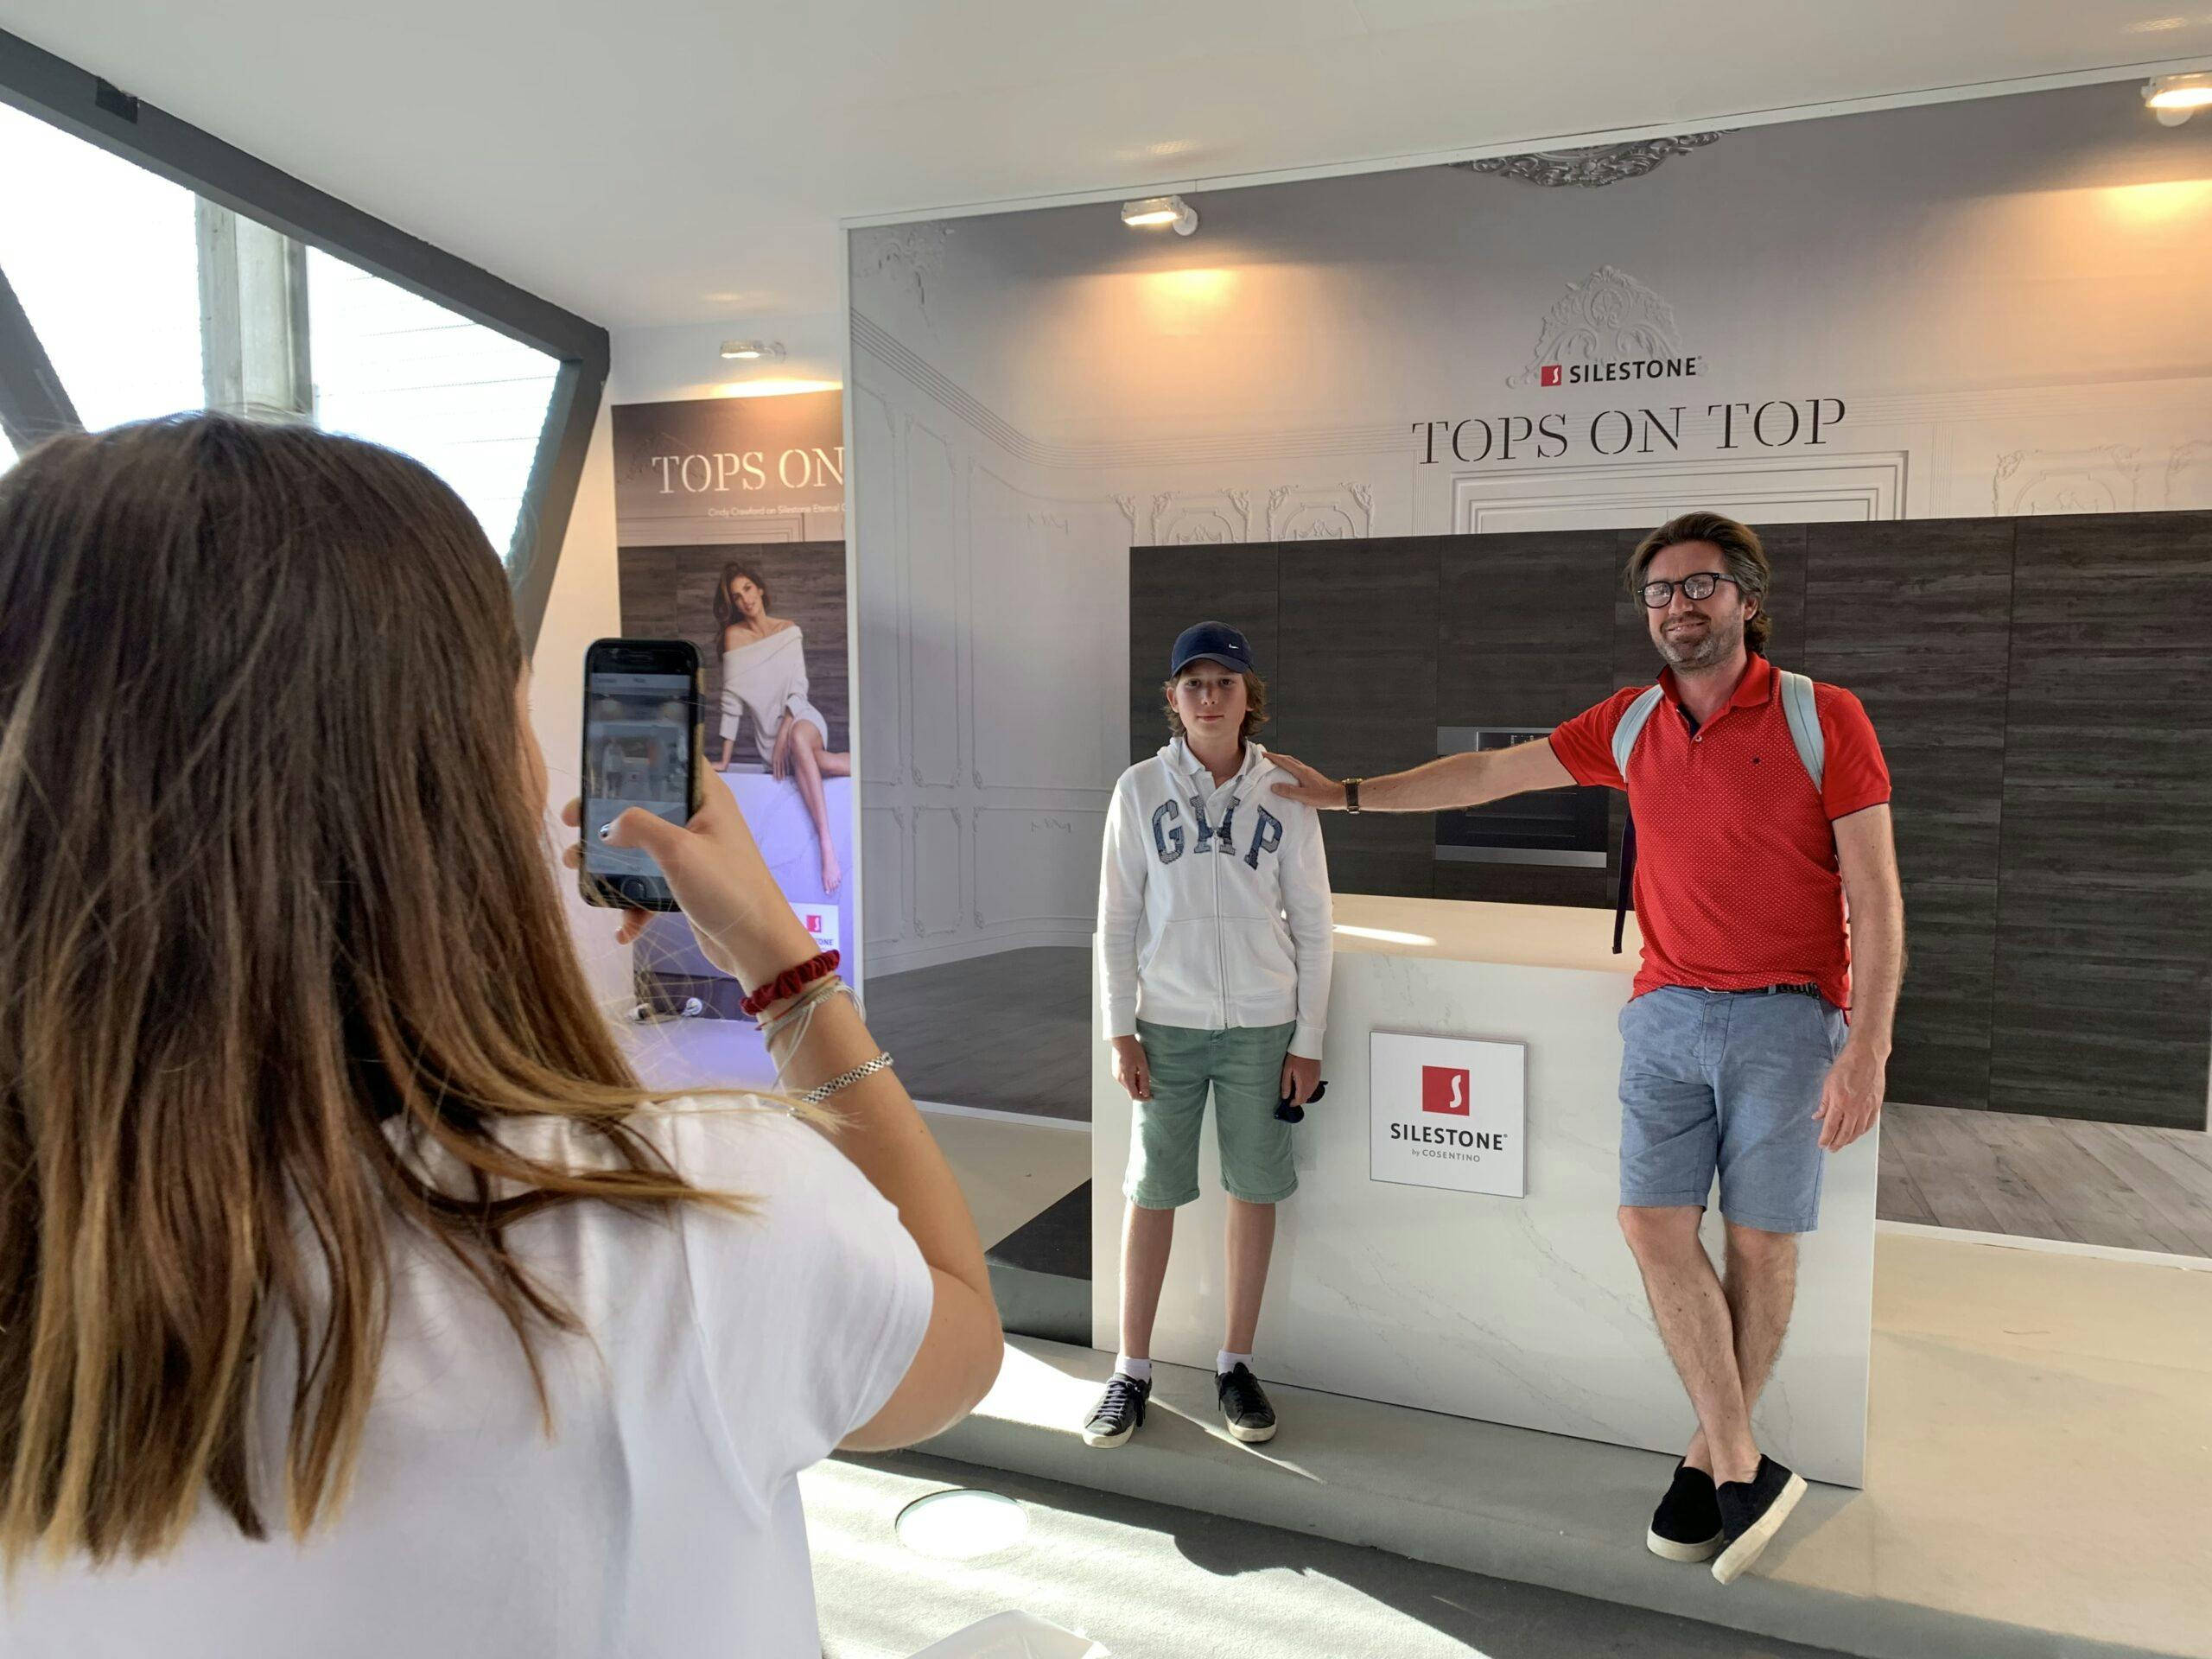 Image 43 of Accion Tops On Top de Silestone en MMO 2019 1 1 scaled in Dekton® stars at the Mutua Madrid Open - Cosentino